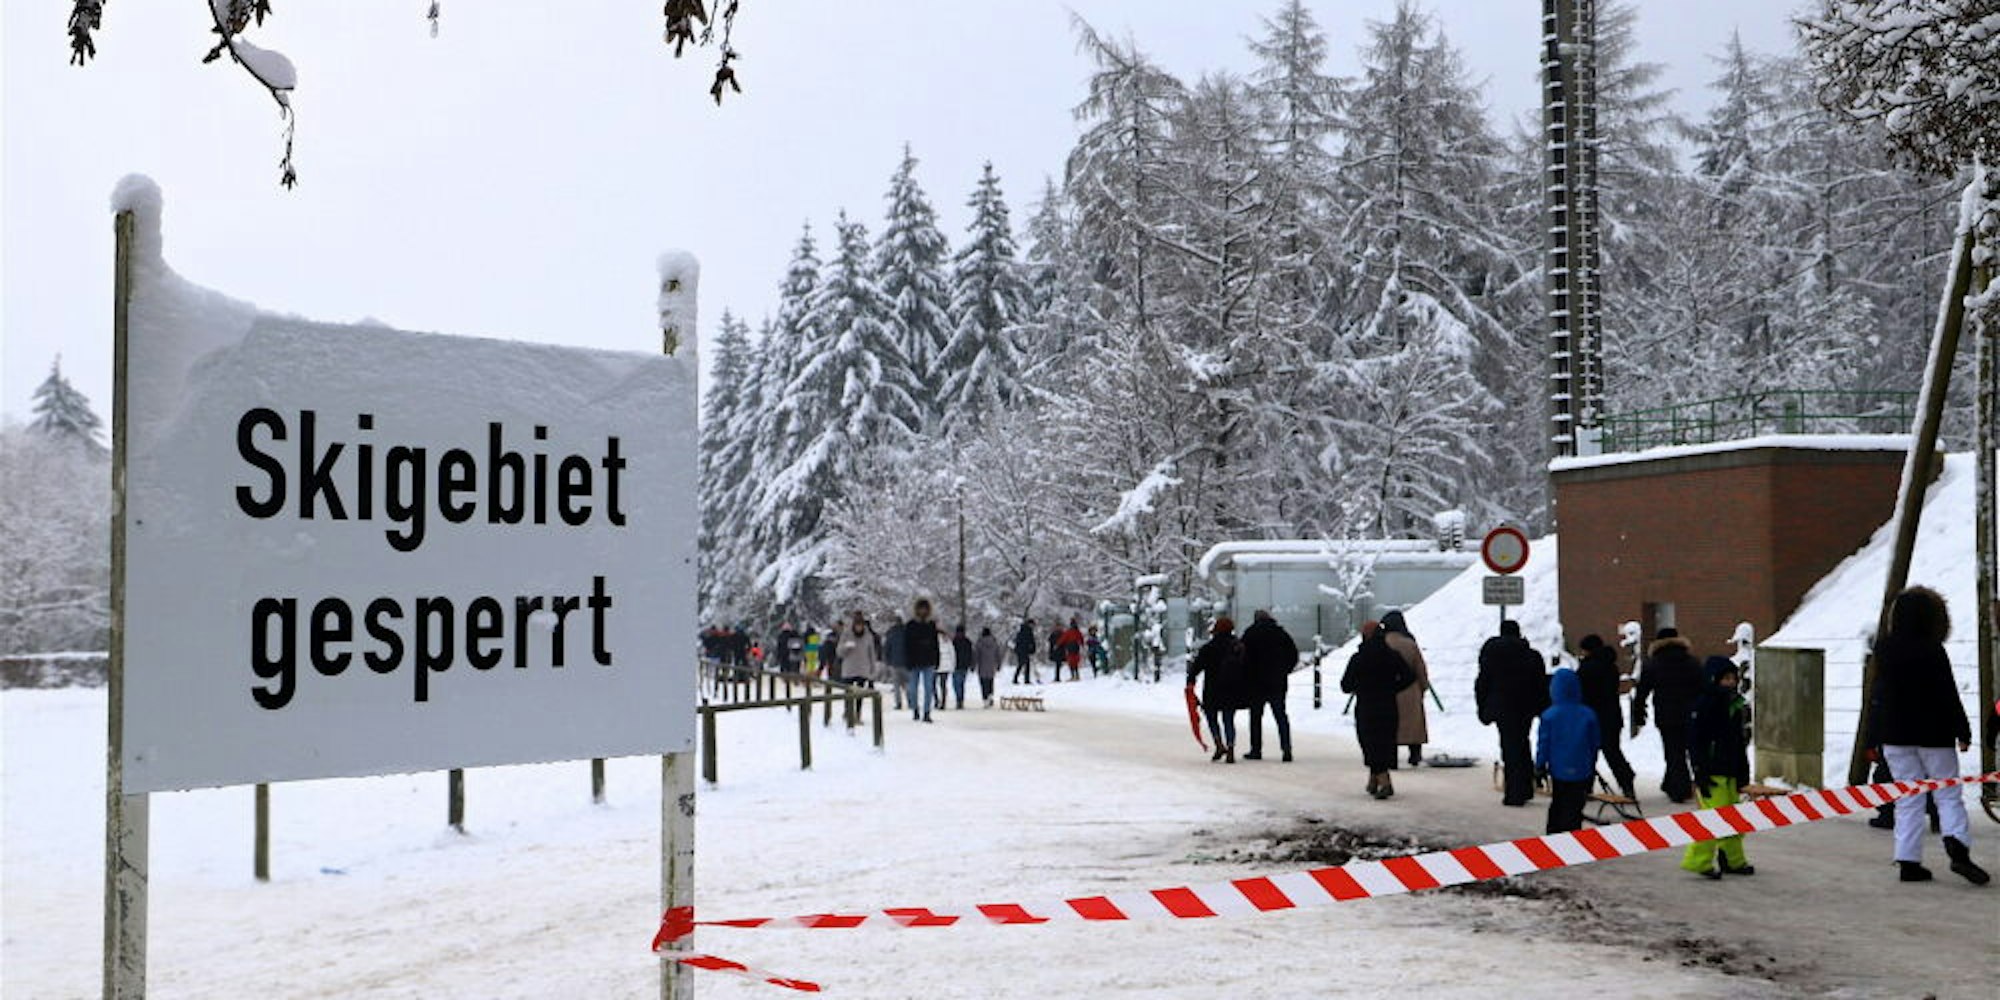 Der Hinweis, dass das Skigebiet gesperrt ist, störte die Besucher auch am Wochenende überhaupt nicht.